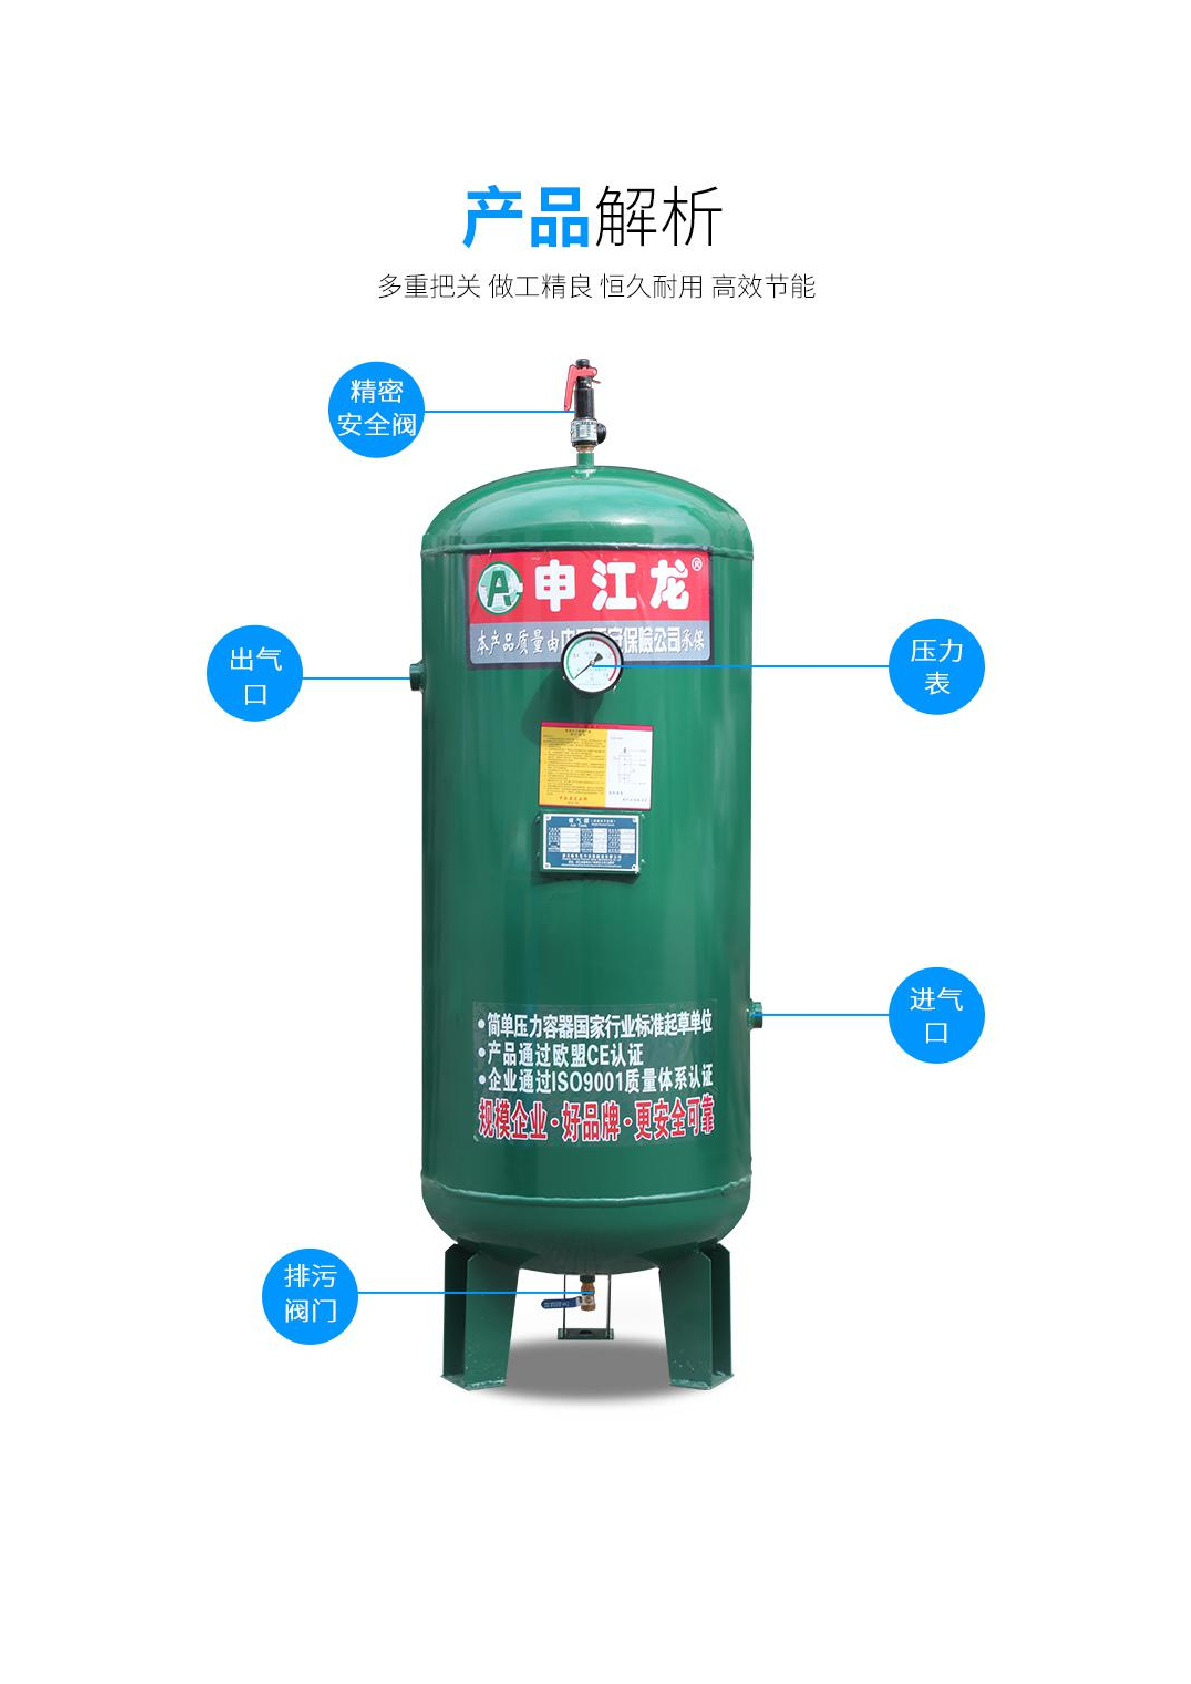 国产申江龙精密安全现货0.3立方储气罐详情图3